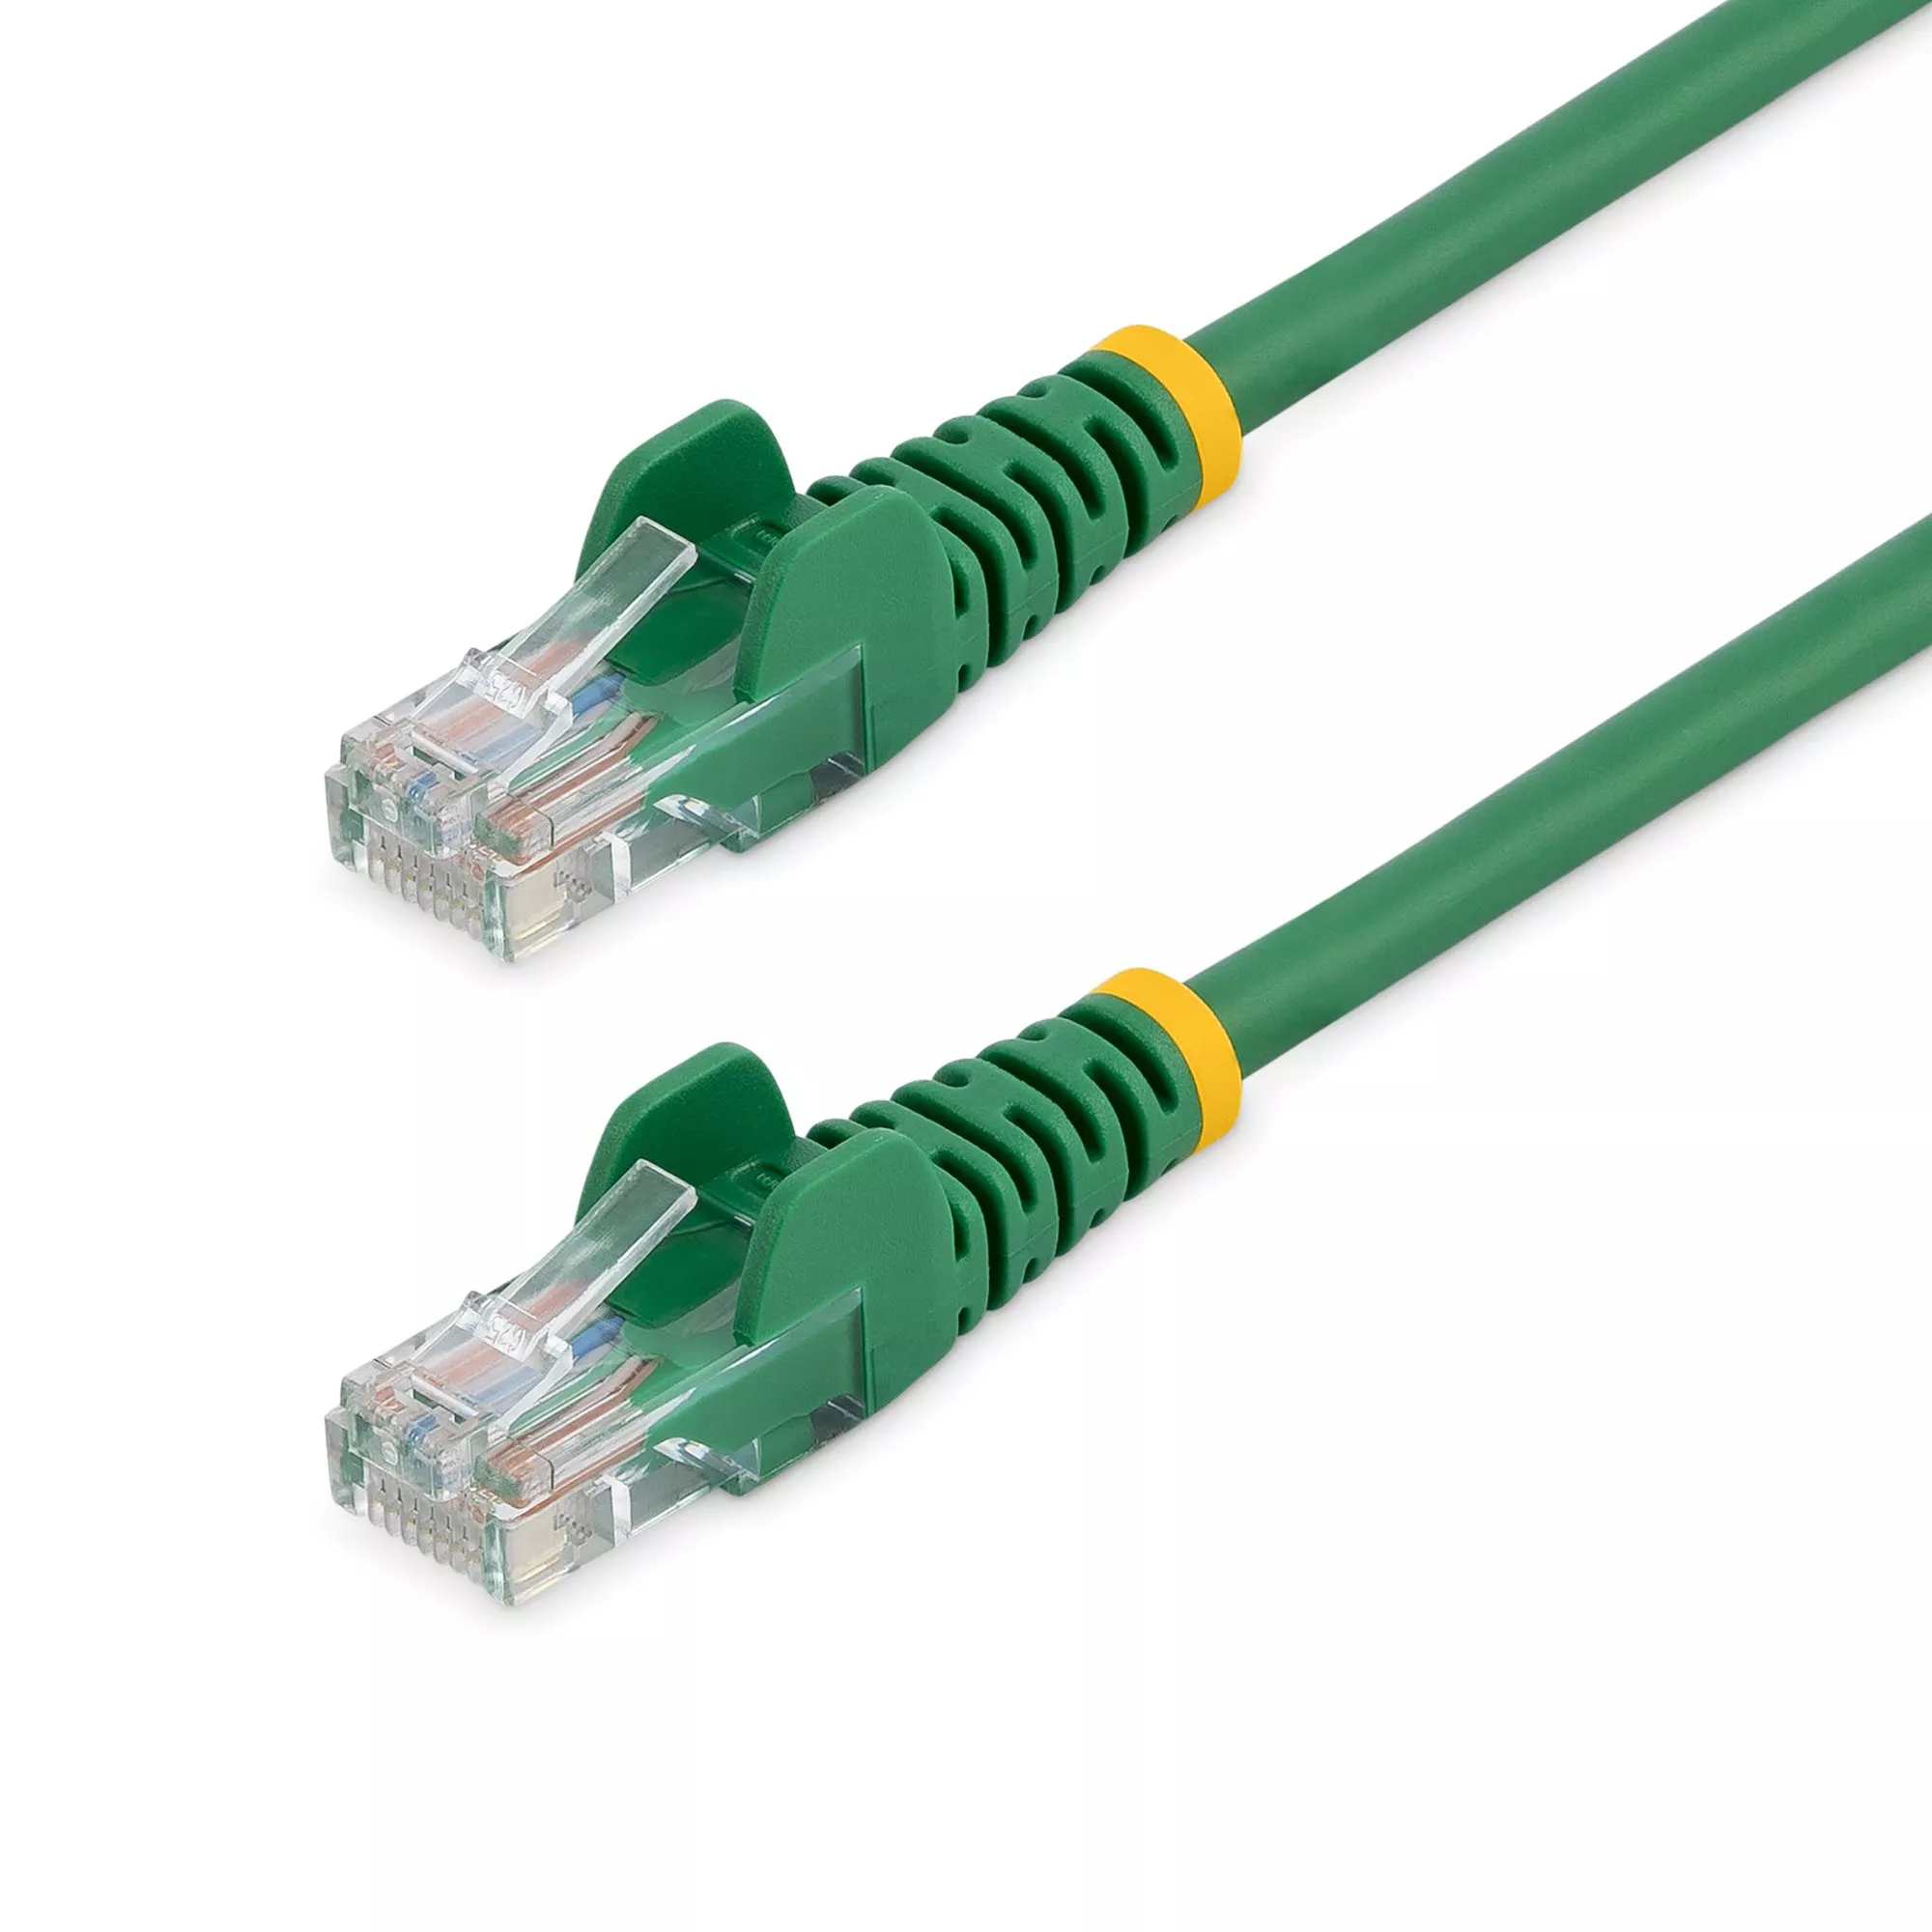 Revendeur officiel StarTech.com Câble réseau Cat5e UTP sans crochet de 1m